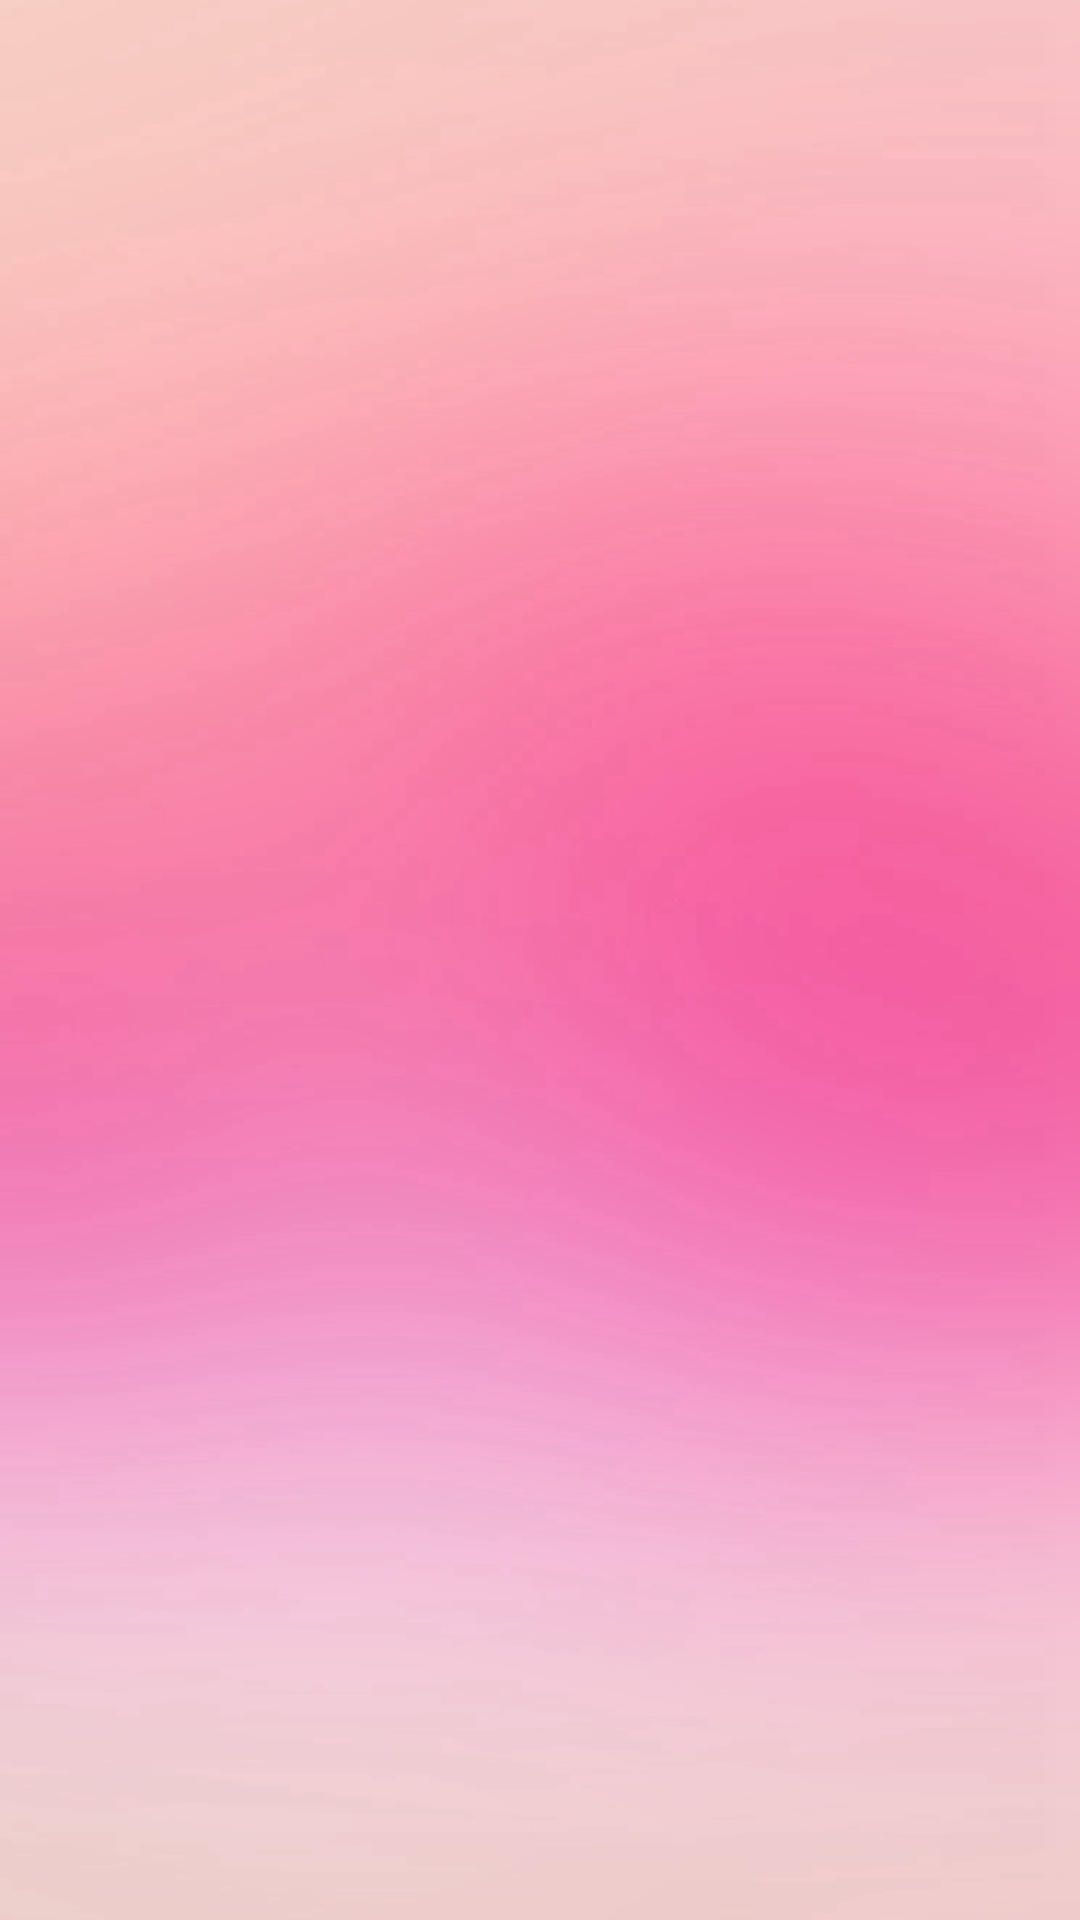 シンプルなピンクのスマホ壁紙 Iphone13 スマホ壁紙 待受画像ギャラリー